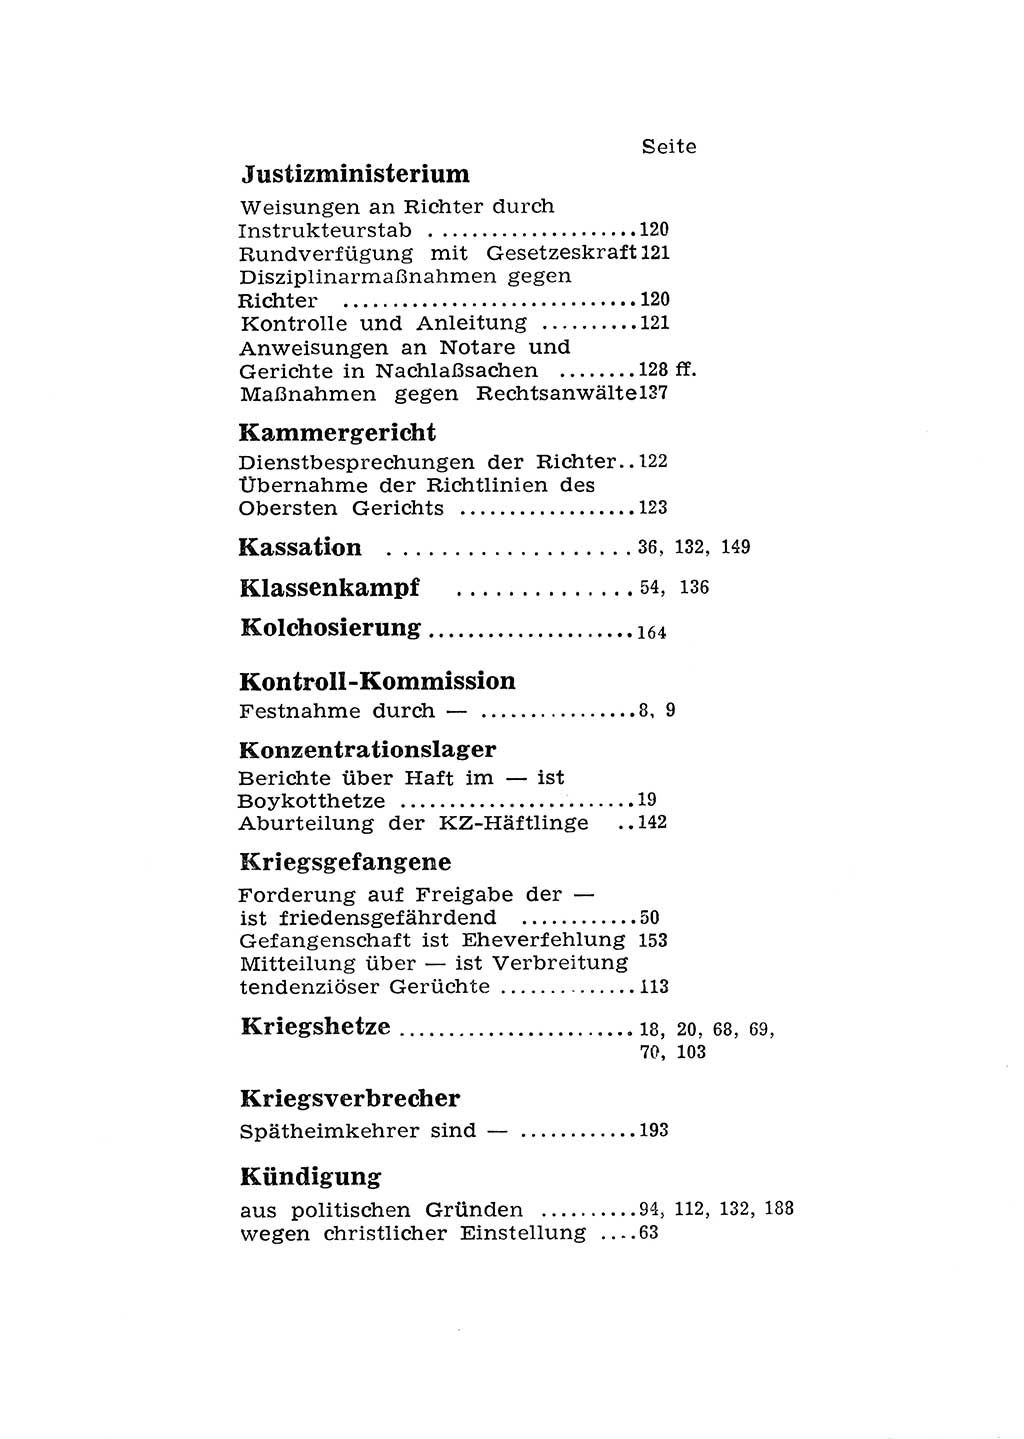 Katalog des Unrechts, Untersuchungsausschuß Freiheitlicher Juristen (UfJ) [Bundesrepublik Deutschland (BRD)] 1956, Seite 202 (Kat. UnR. UfJ BRD 1956, S. 202)